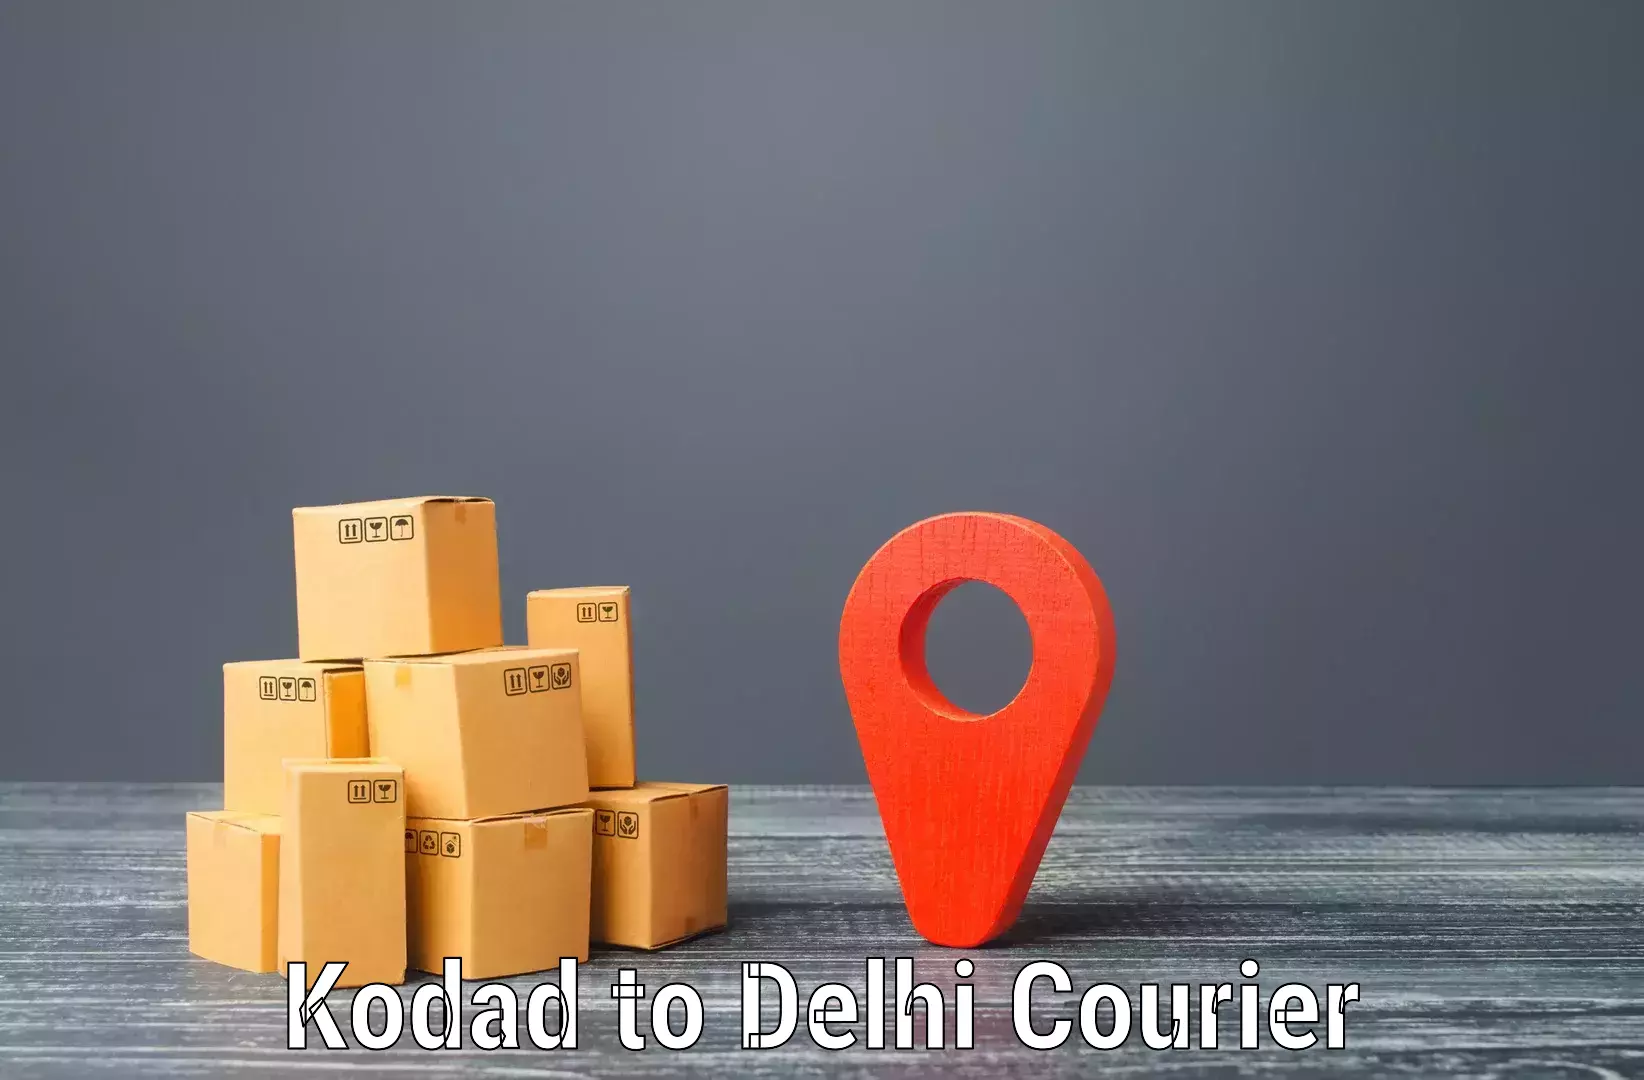 Round-the-clock parcel delivery Kodad to Sarojini Nagar